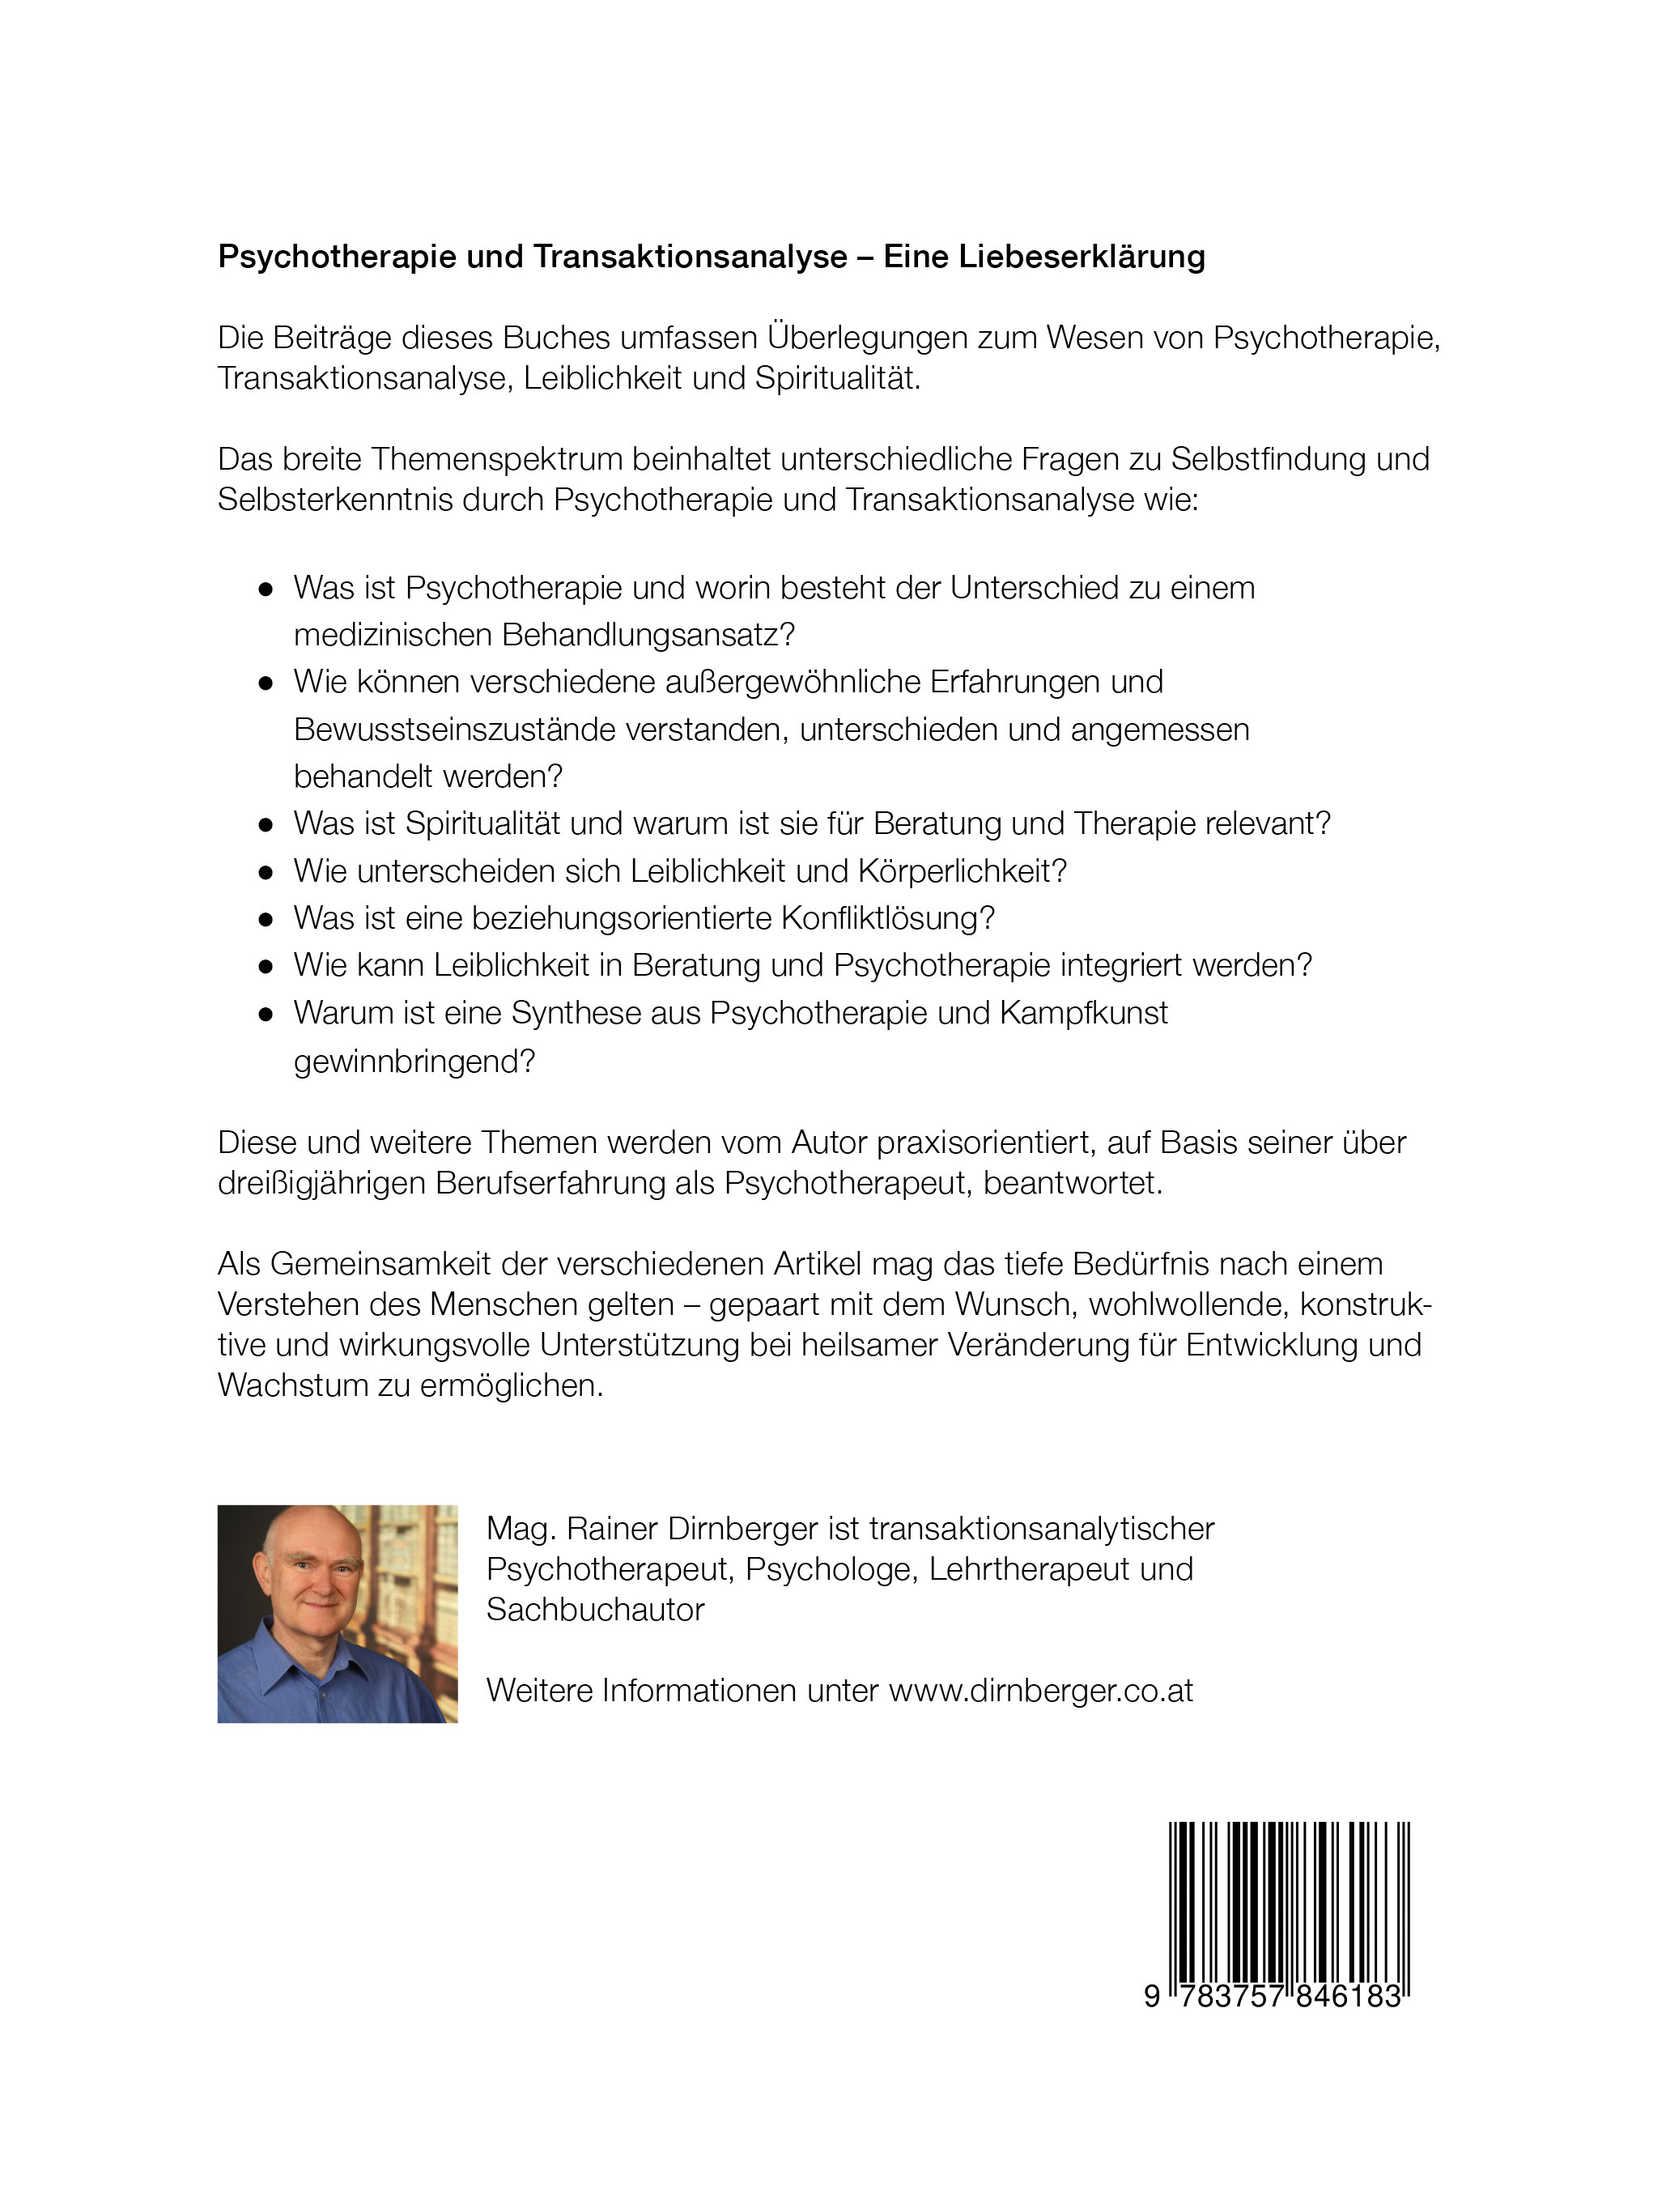 RainerDirnberger_Transaktionsanalyse_Cover_Rckseite.jpg